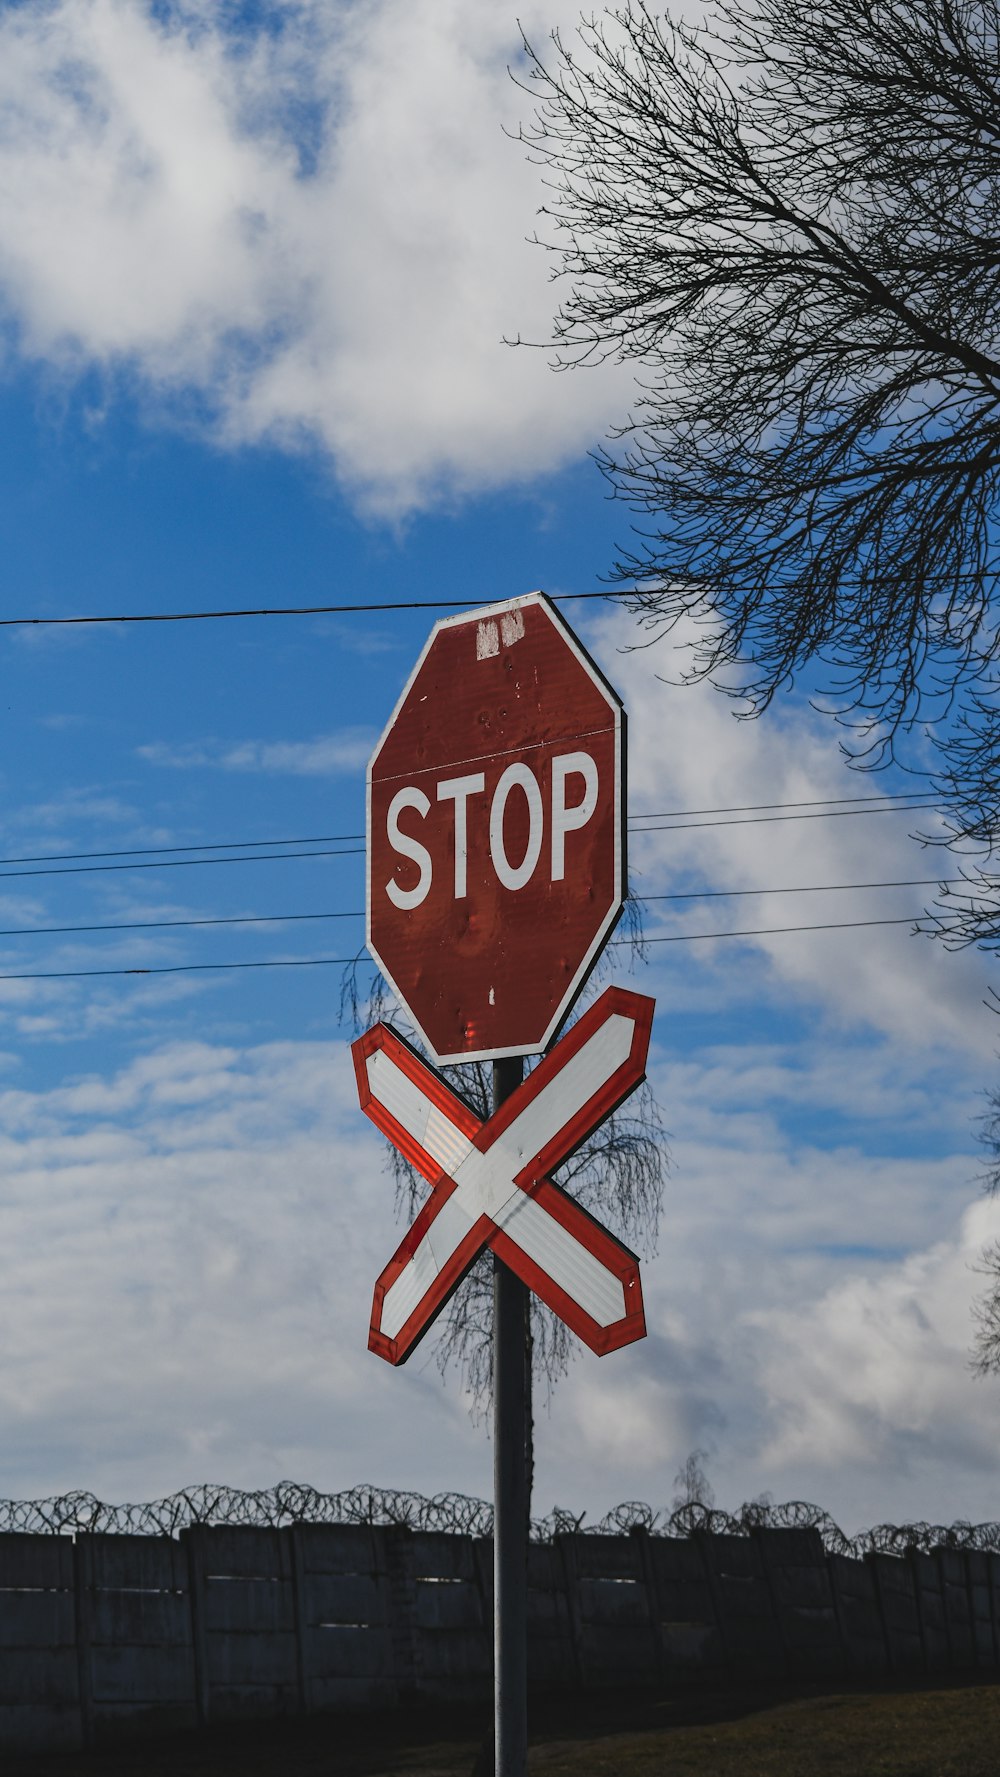 Biển báo STOP là những biển báo đặc biệt để đảm bảo an toàn cho các nhà lái xe và người đi bộ. Sản phẩm sản xuất chất lượng và độ bền cao, đảm bảo luôn sáng bóng và chống phai màu trong thời gian dài. Hãy khám phá hình ảnh liên quan đến biển báo STOP và học hỏi thêm kiến thức về luật giao thông.